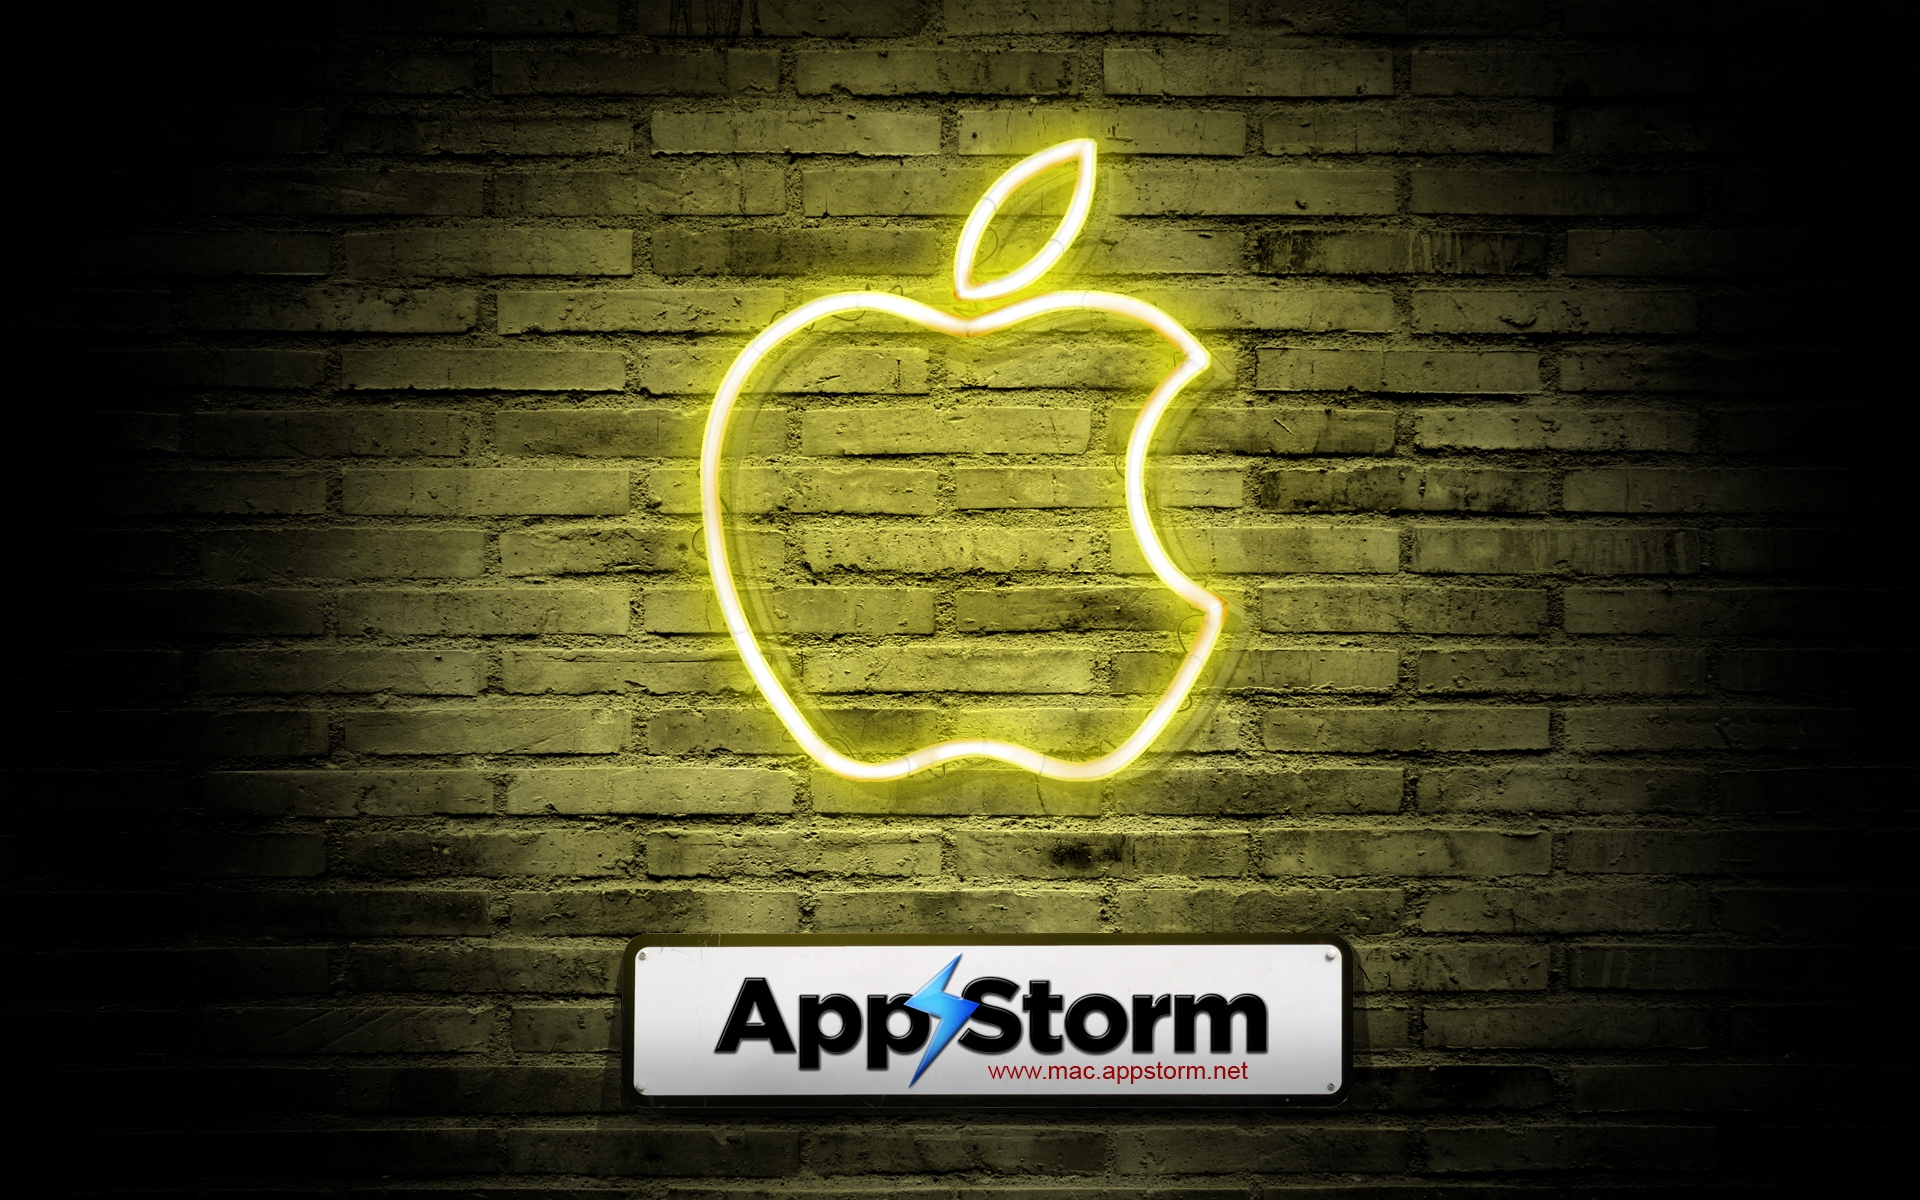 Картинки App storm, apple, mac, wall, brick red, yellow, shadow фото и обои на рабочий стол